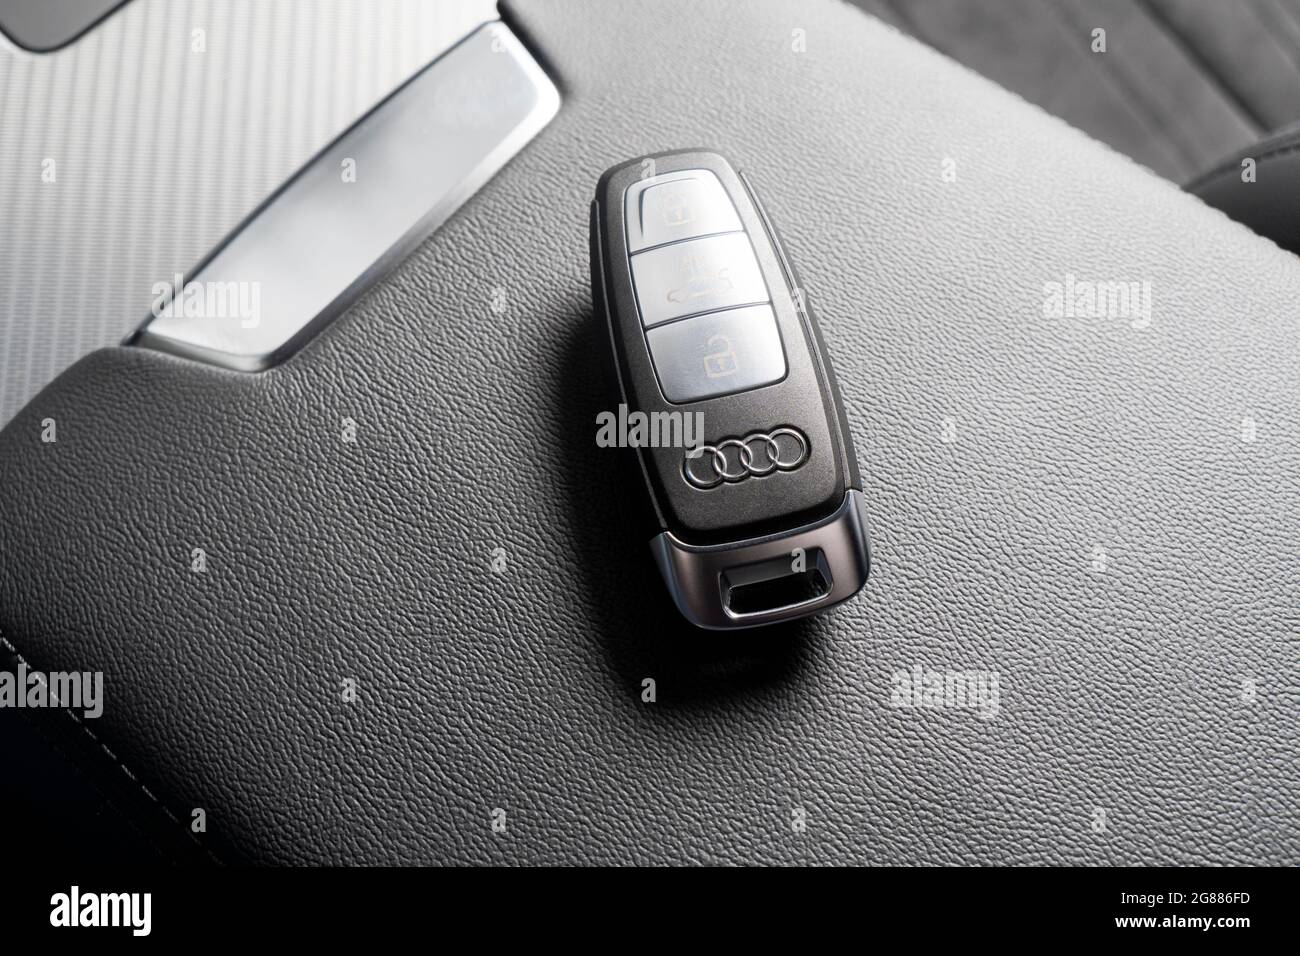 Sankt-Petersburg, Russie, 25 mars 2021: Gros plan des clés de voiture Audi A6 en cuir noir interio d'une voiture moderne. Détails de l'intérieur de l'Audi A6 S-Line. Banque D'Images